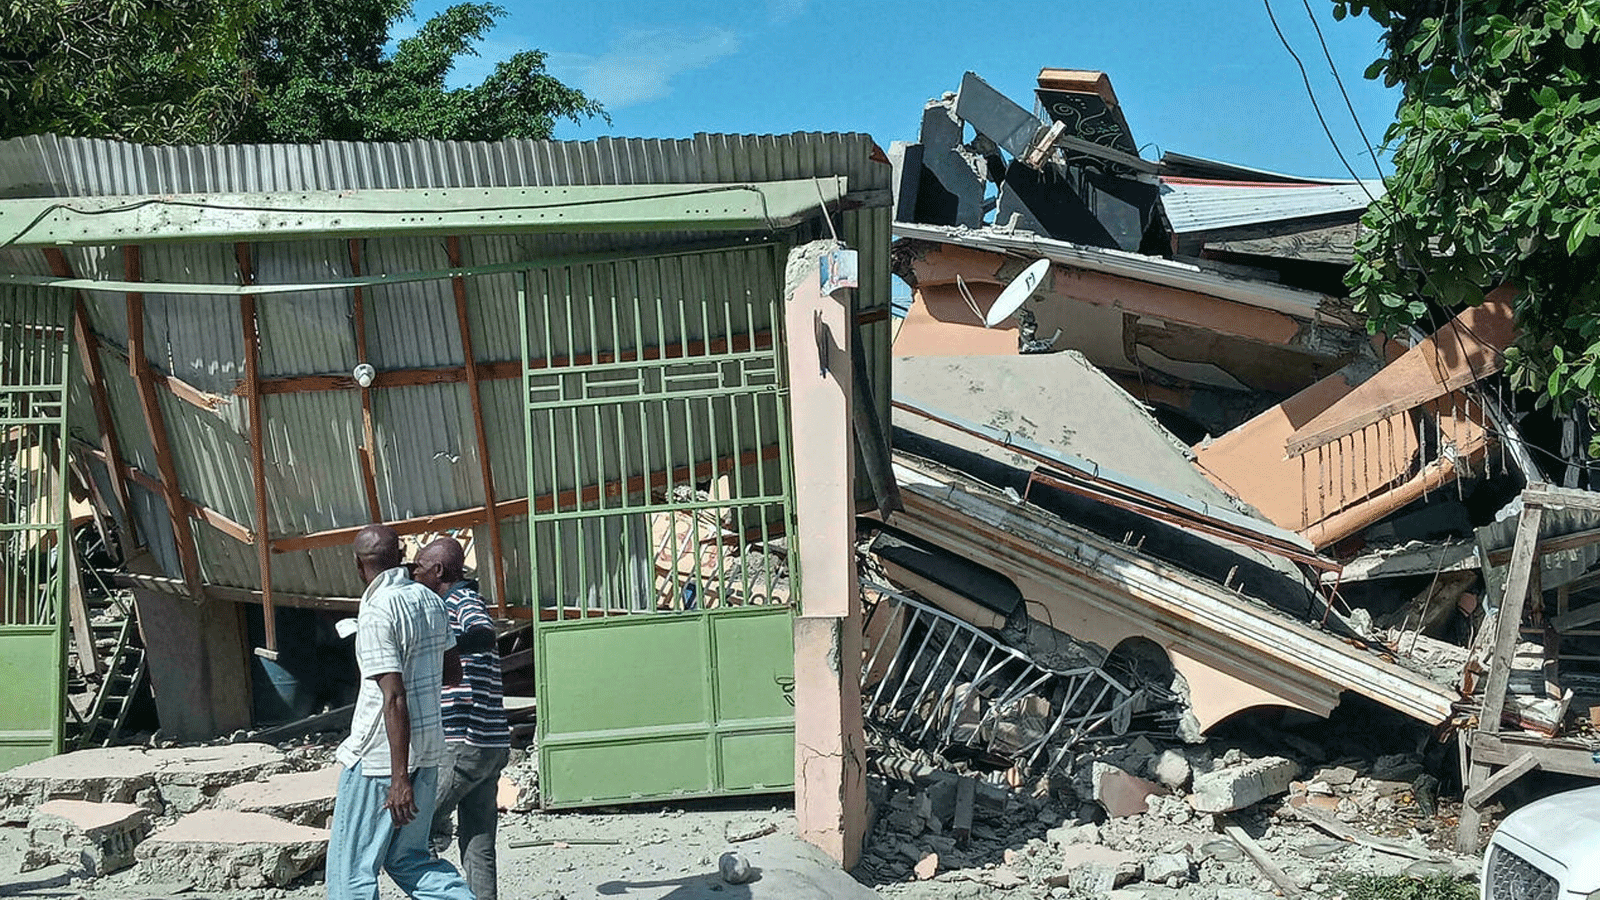 أشخاص يسيرون بالقرب من منزل منهار ضربه الزلزال في 14 آب/ أغسطس 2021 في ليس كاي ، جنوب غرب هايتي.